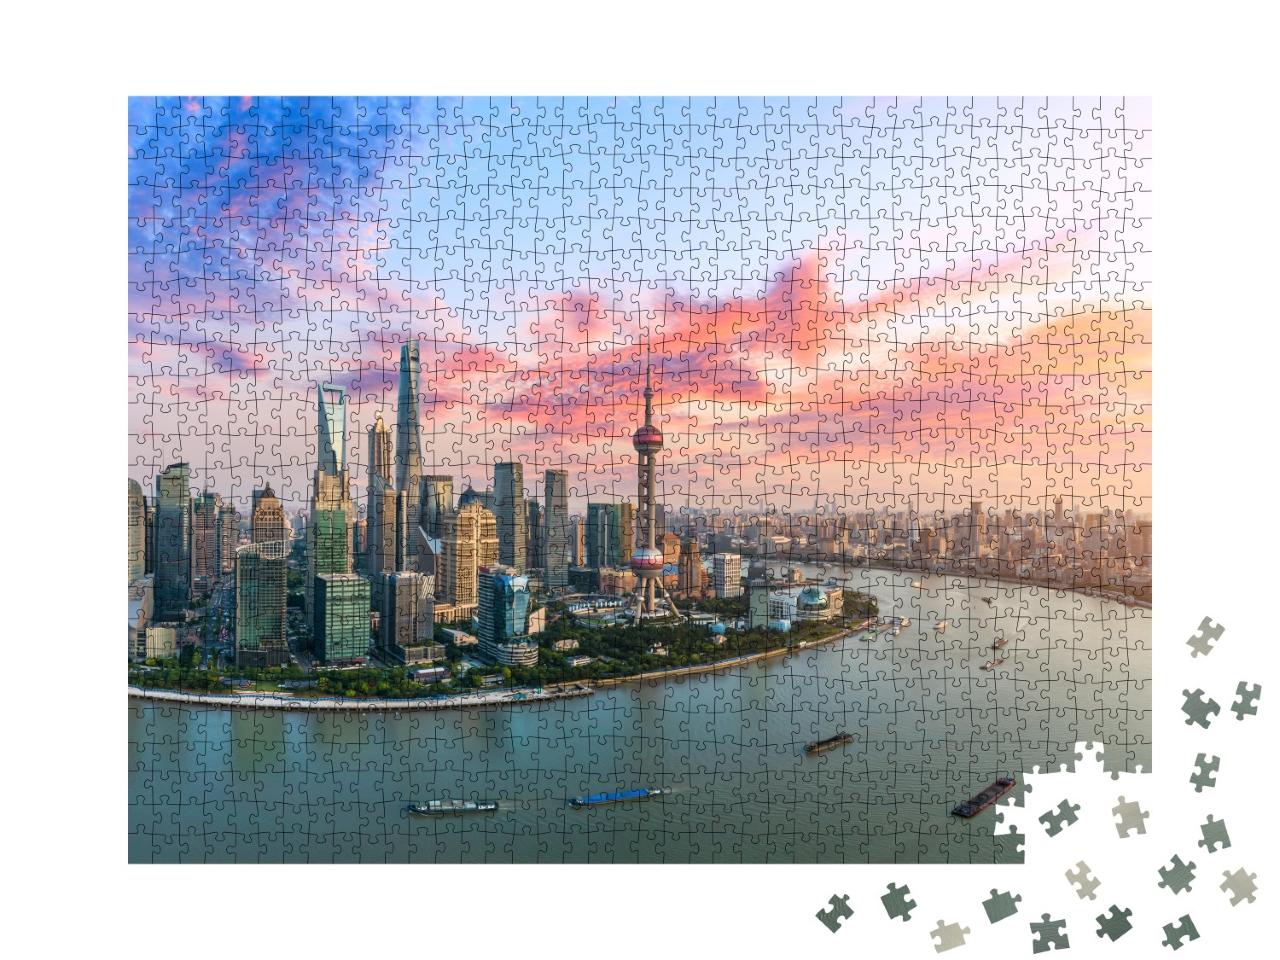 Puzzle de 1000 pièces « Vue aérienne de la ligne d'horizon de Shanghai au crépuscule »